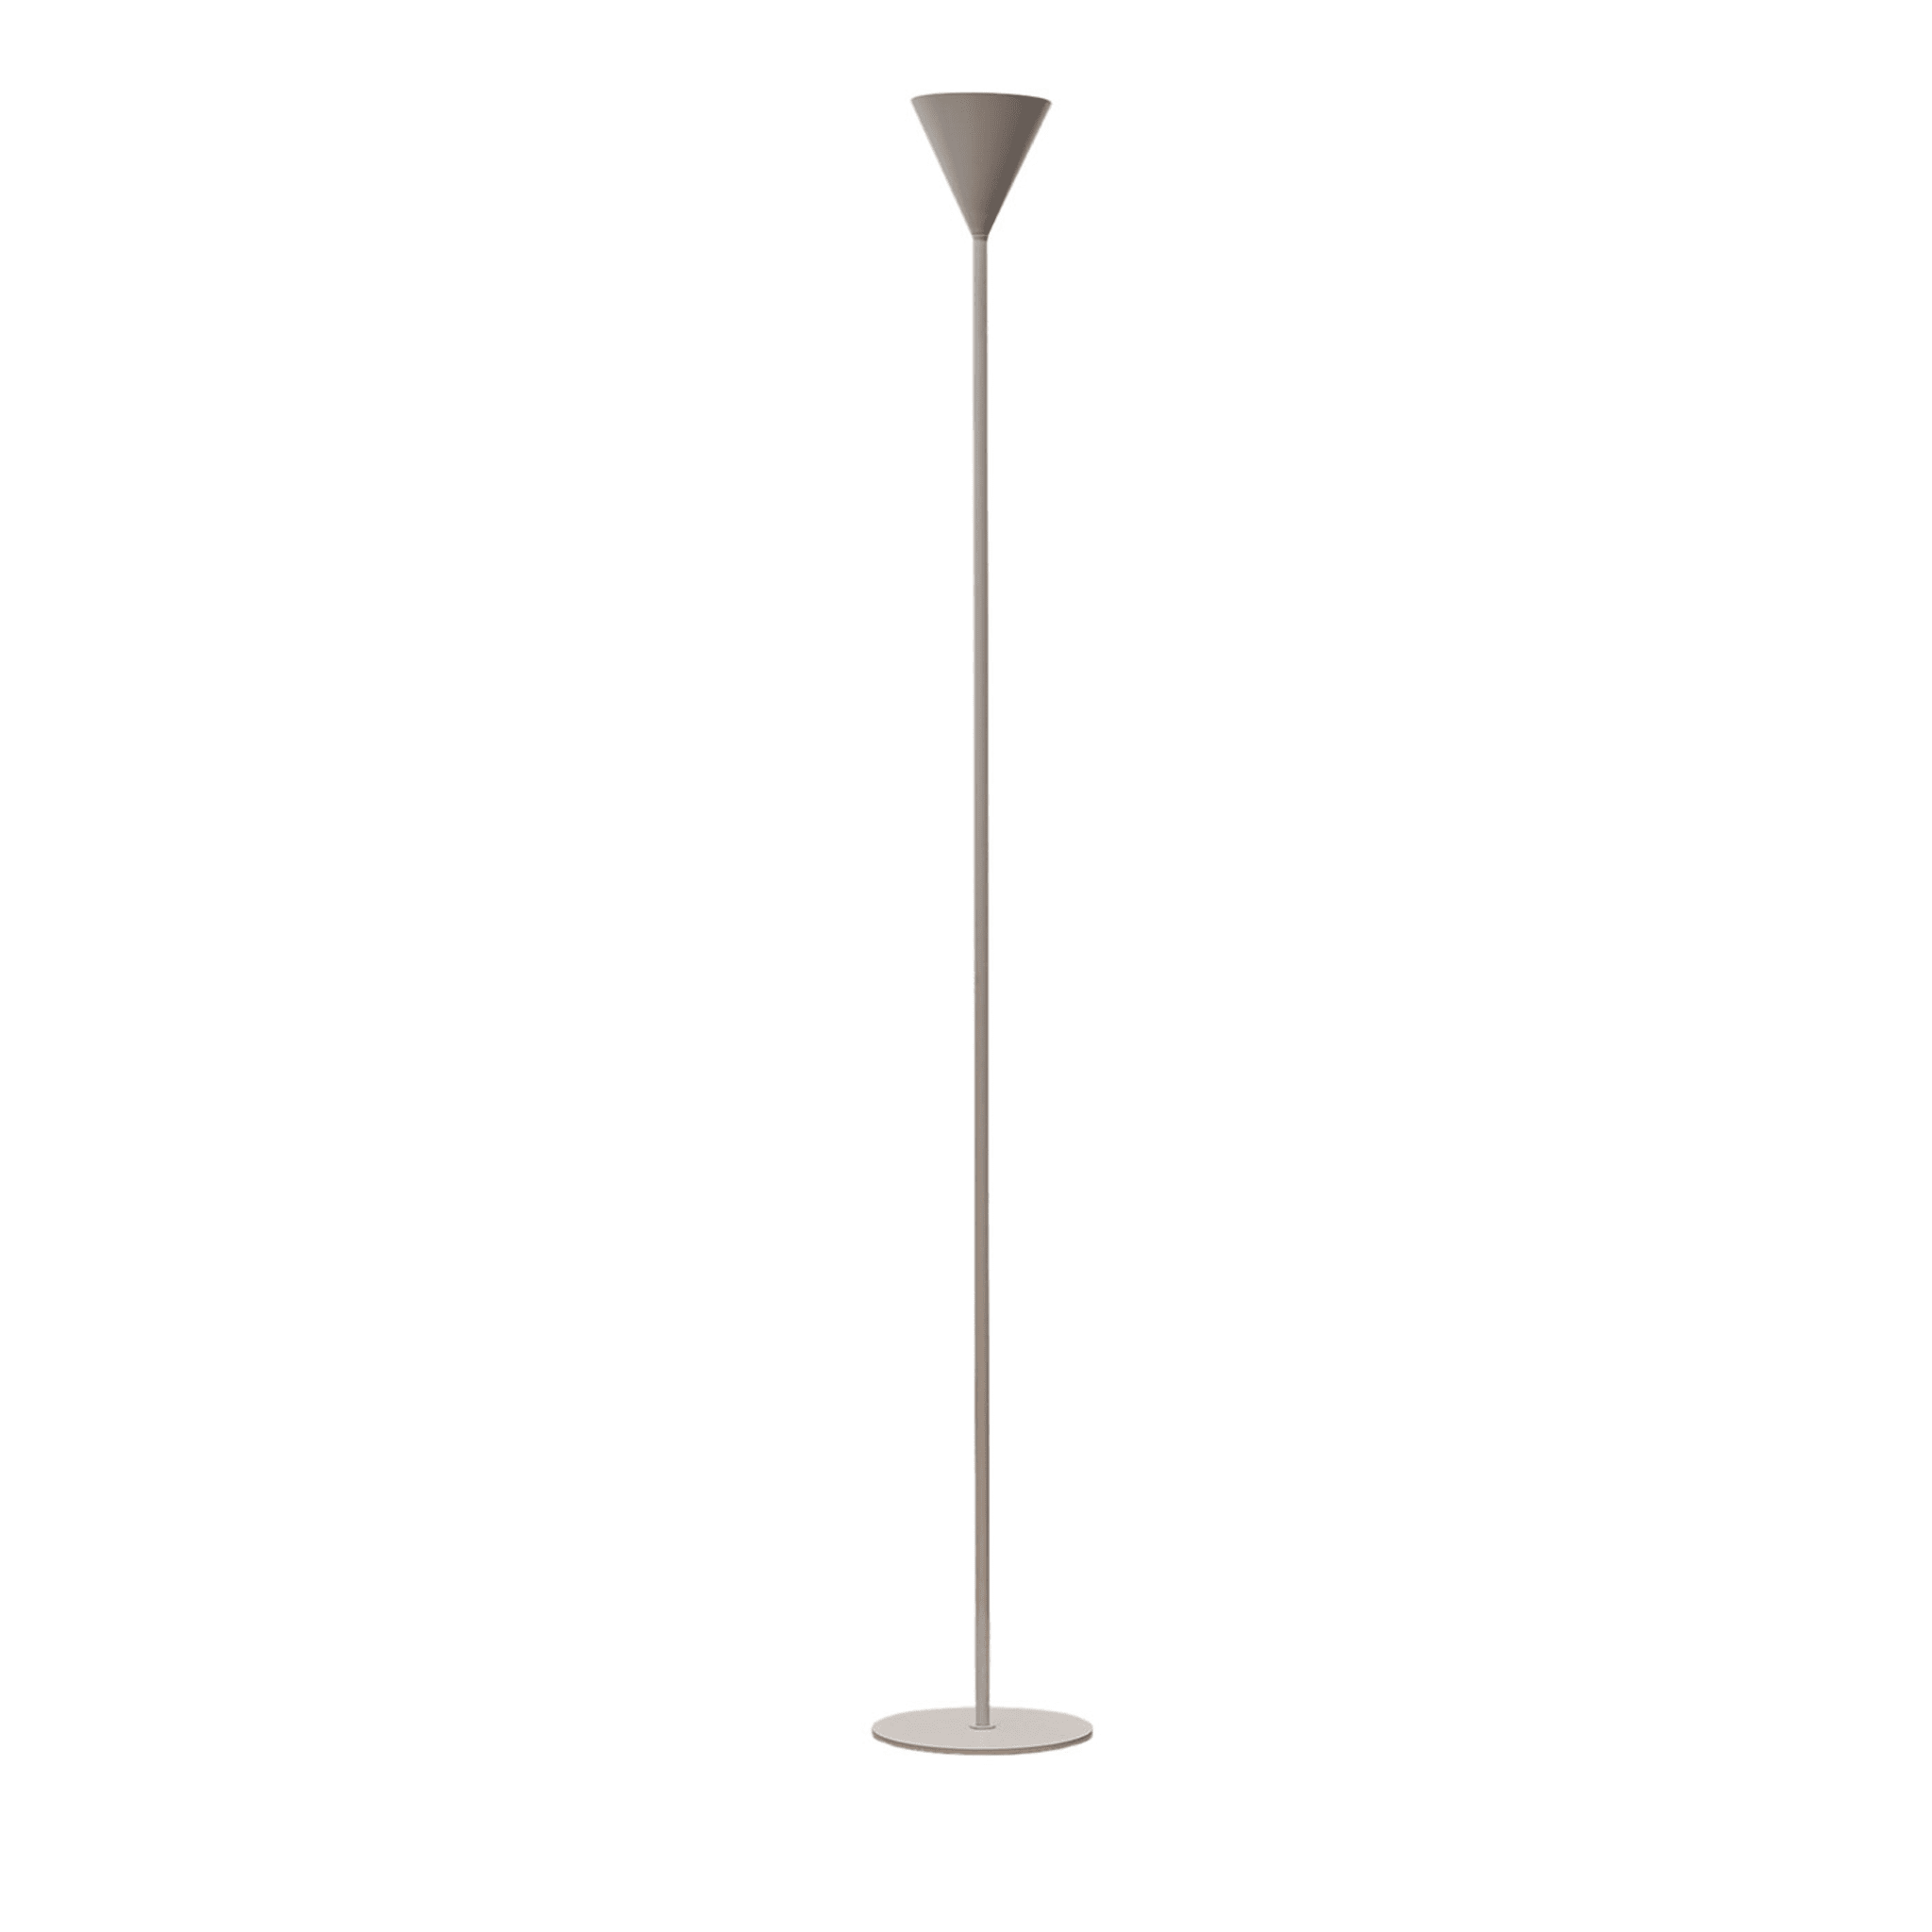 Cono Small White Floor Lamp by Carlo Guglielmi - Main view